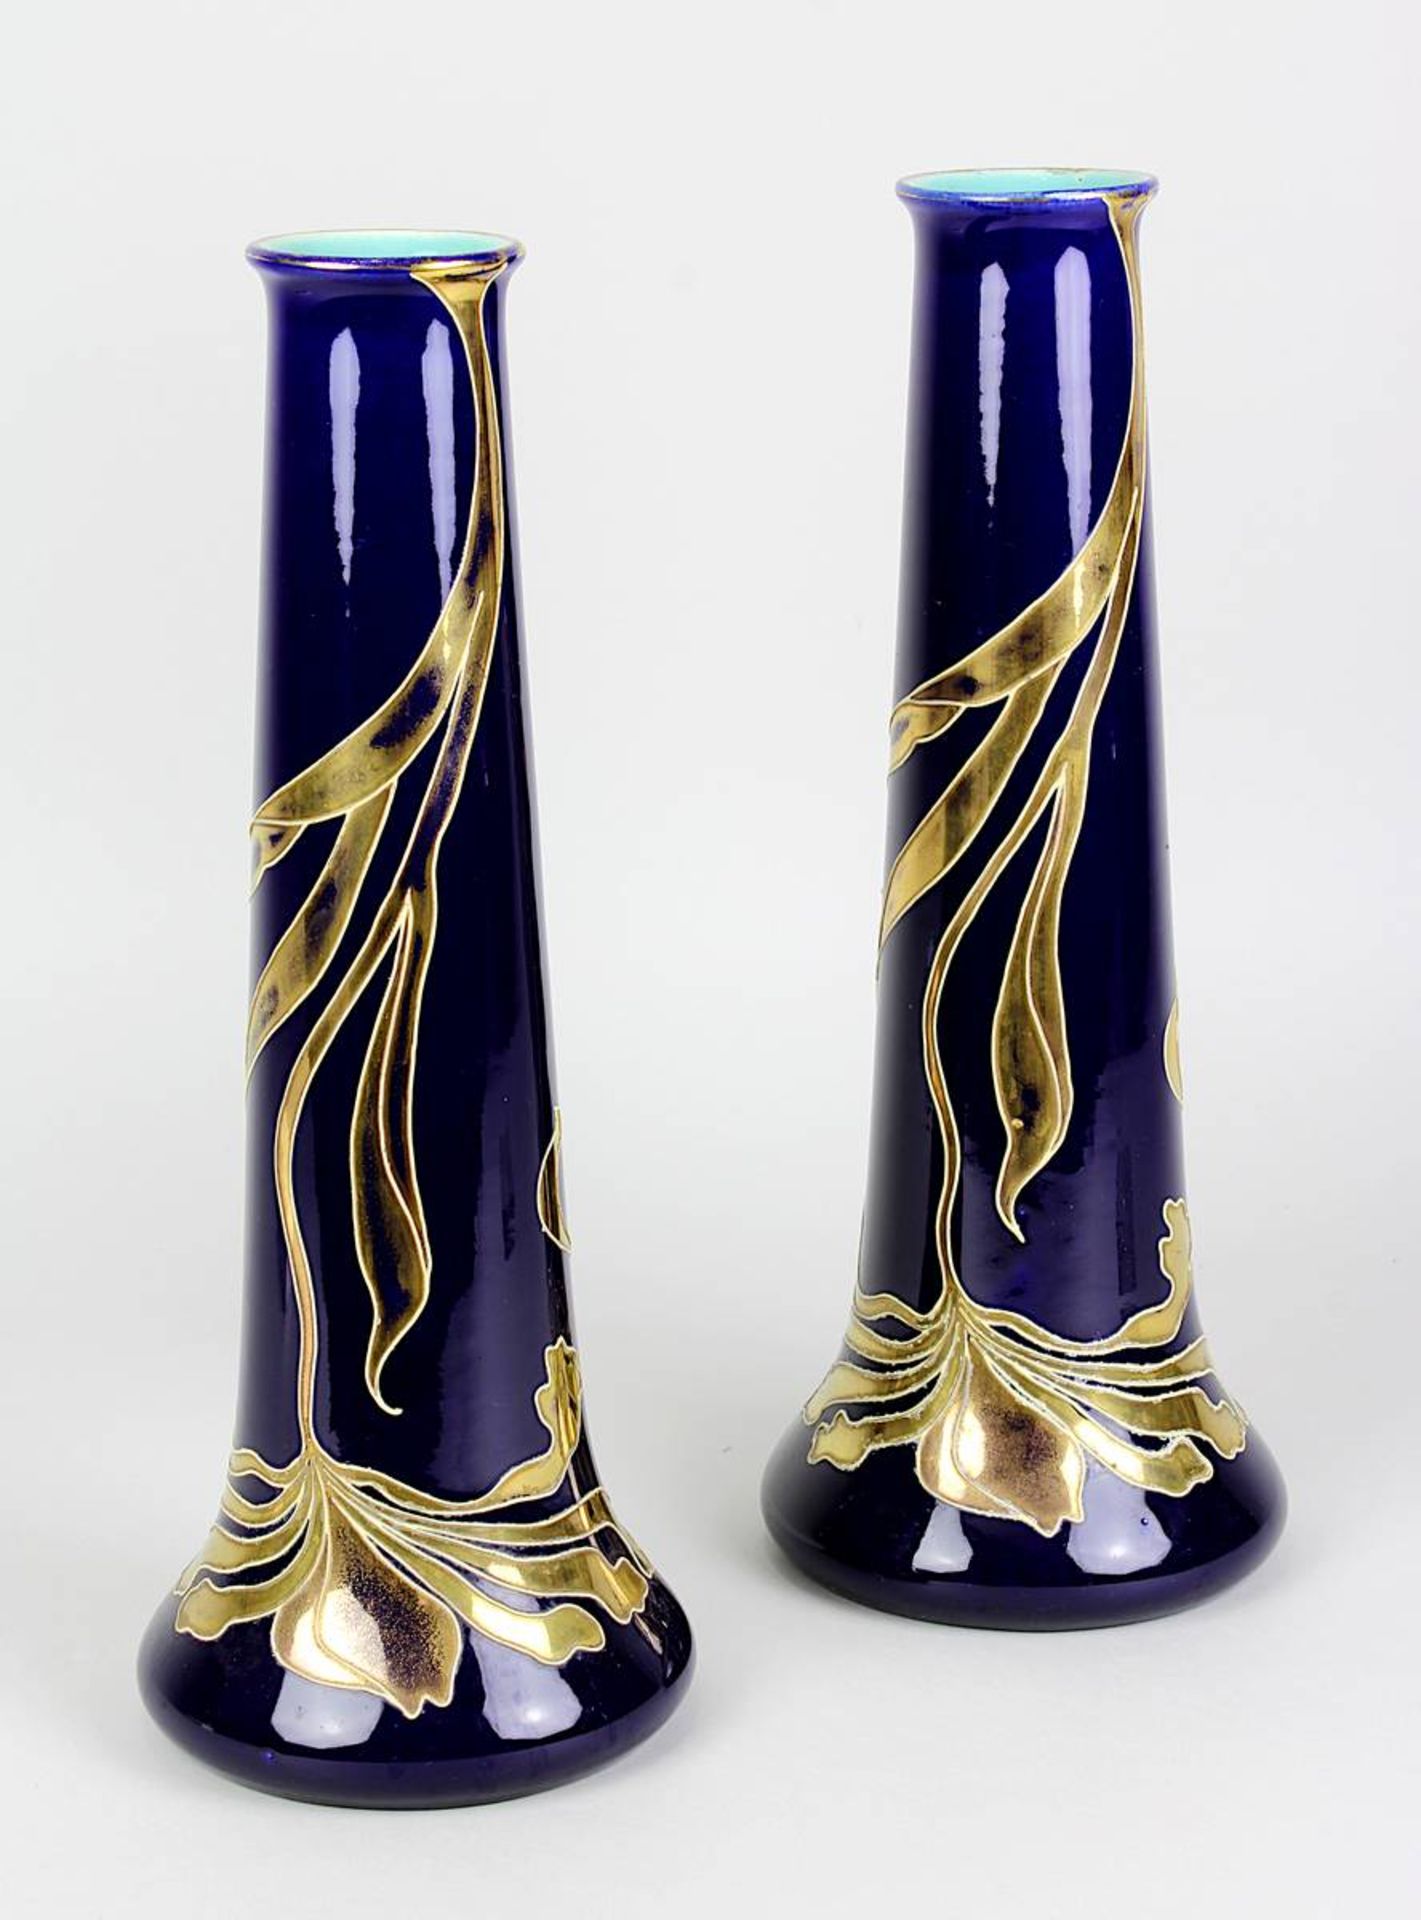 Paar Saargemünd Jugendtil-Vasen, Utzschneider um 1910, trichterförmiger Korpus aus Keramik, heller